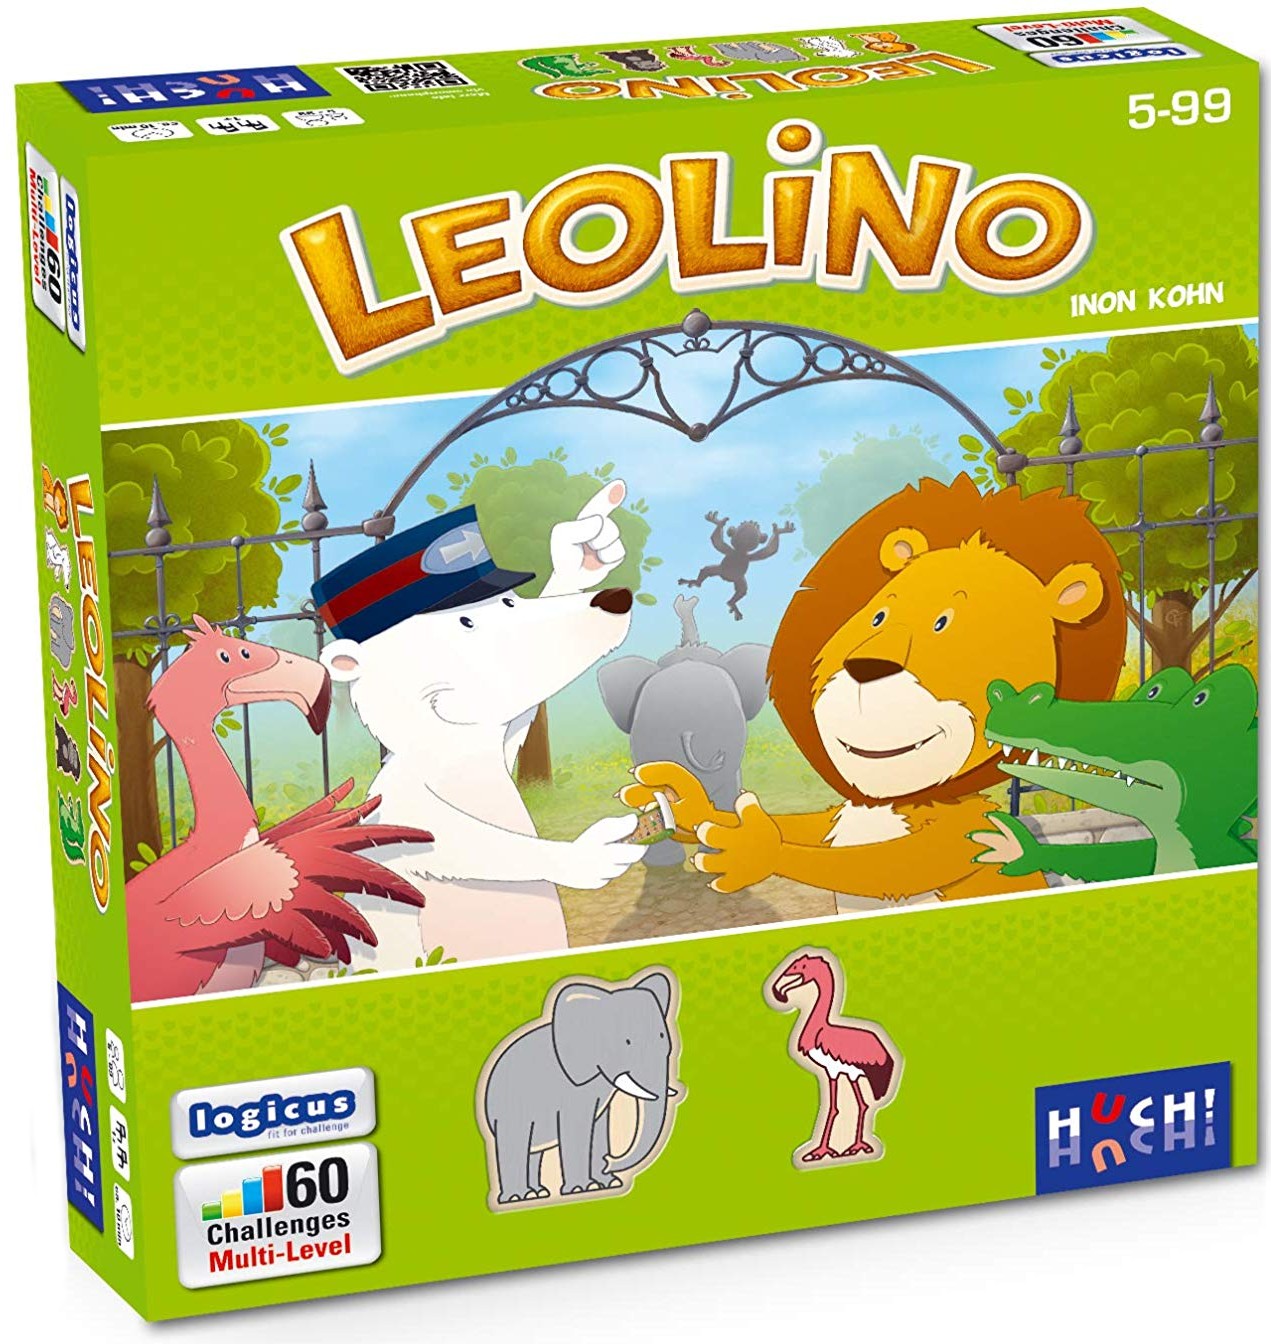 Boite du jeu Leolino offert chez LilloJEUX